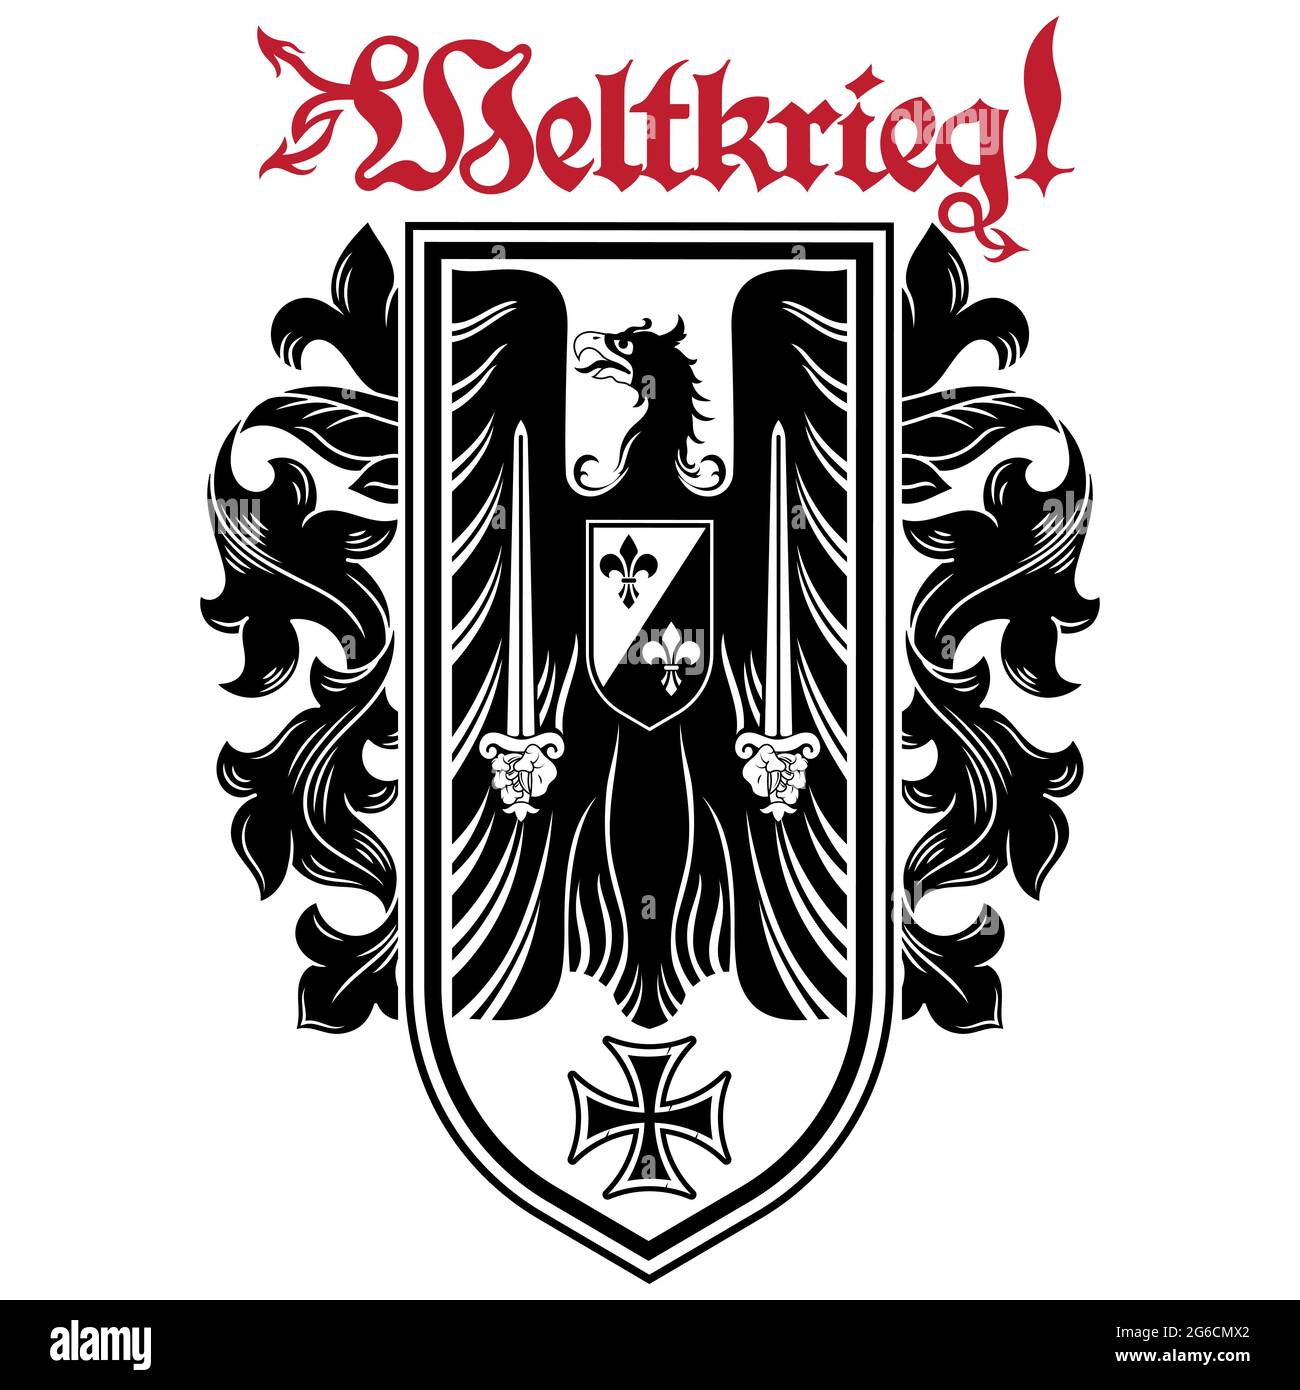 Ritterdesign. Wappentier mit Schwertern, Eisenkreuz und Inschrift - Weltkrieg Stock Vektor